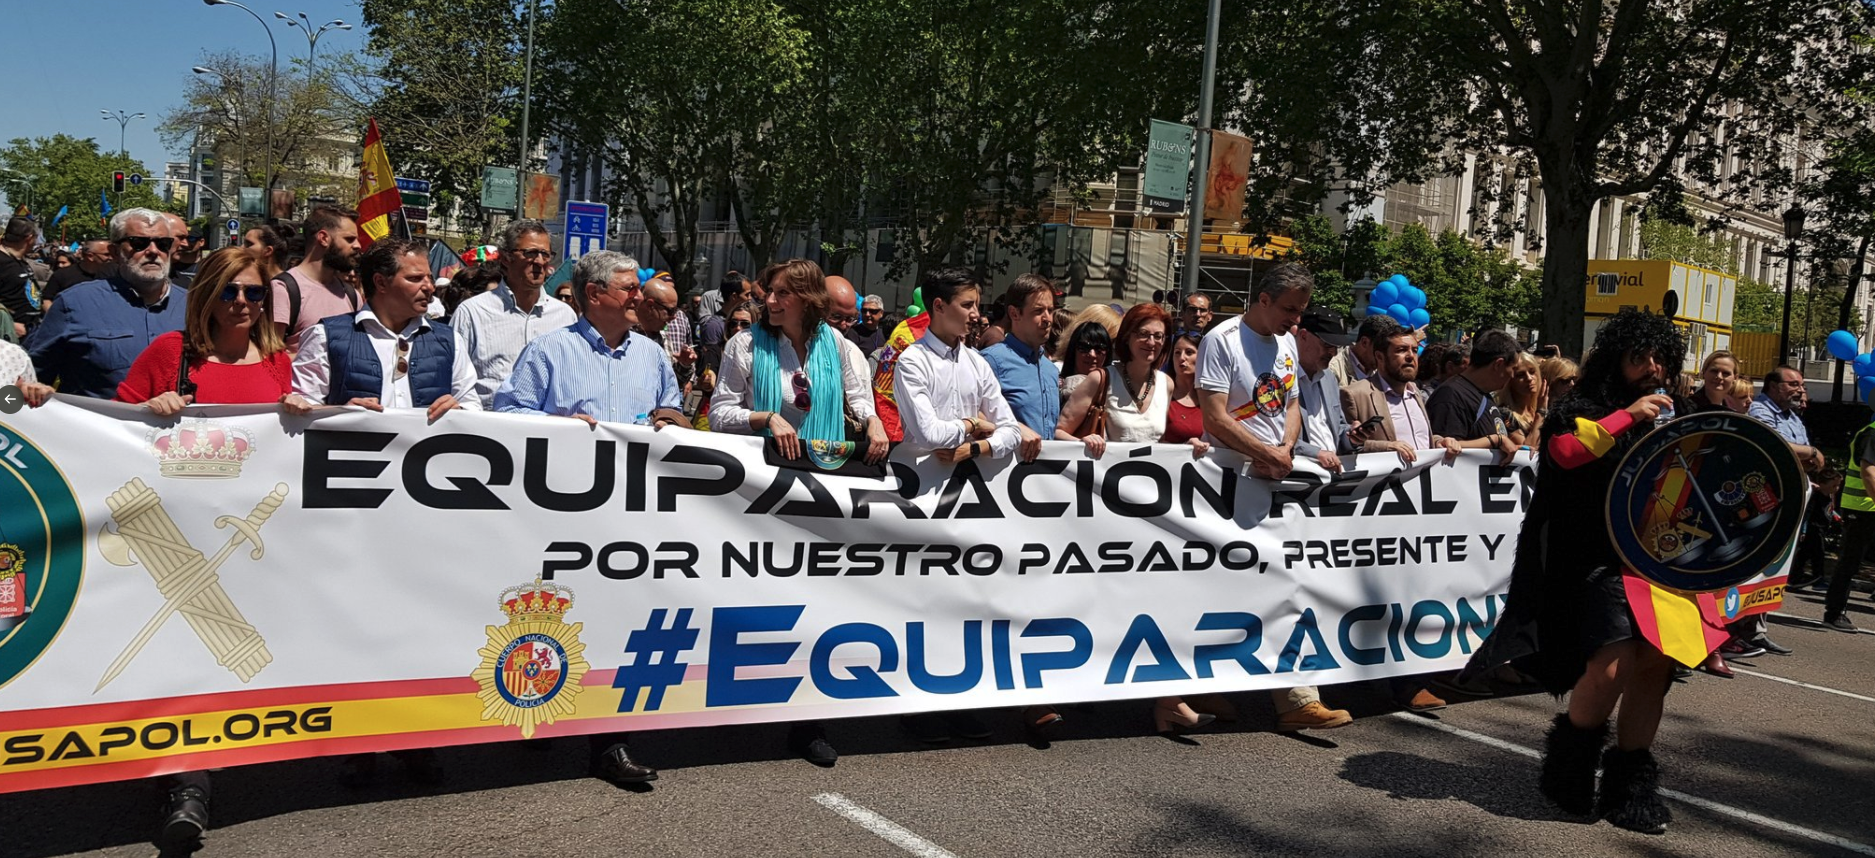 La diputada del PSOE Zaida Cantera contra el derecho de los policías a manifestarse: «Son una amenaza»